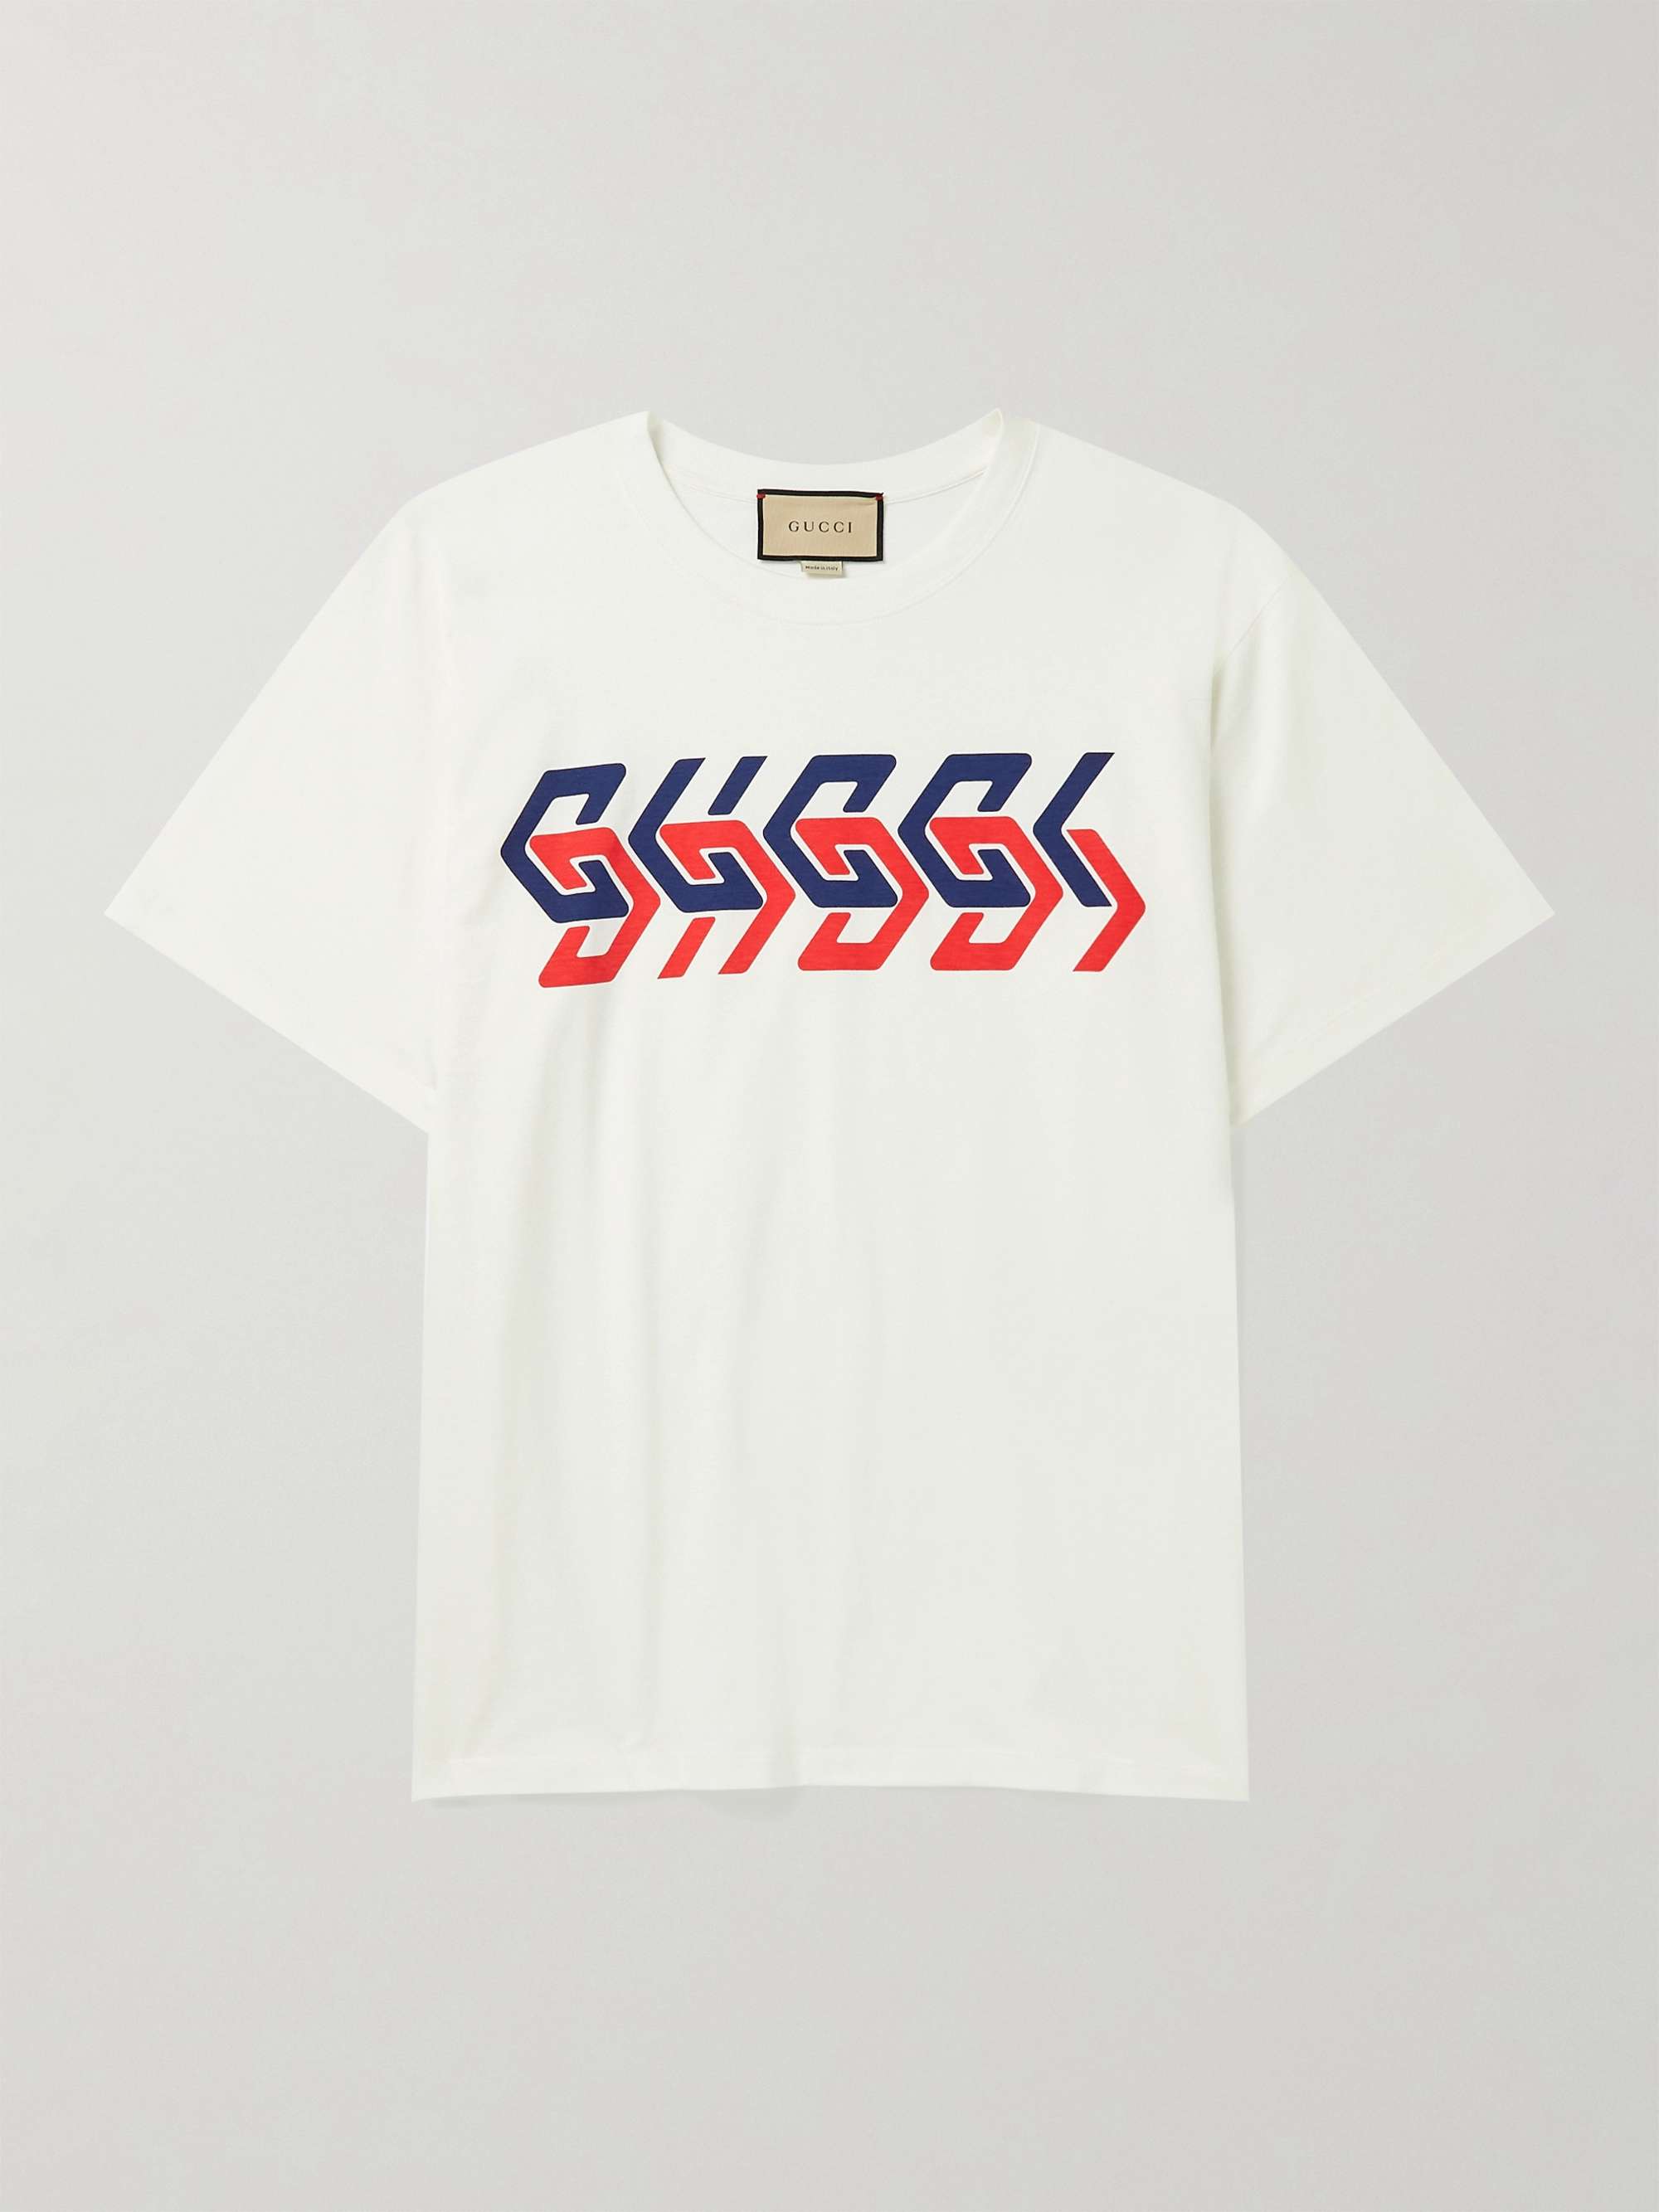 Gucci - Men - logo-print Cotton-jersey T-Shirt White - S